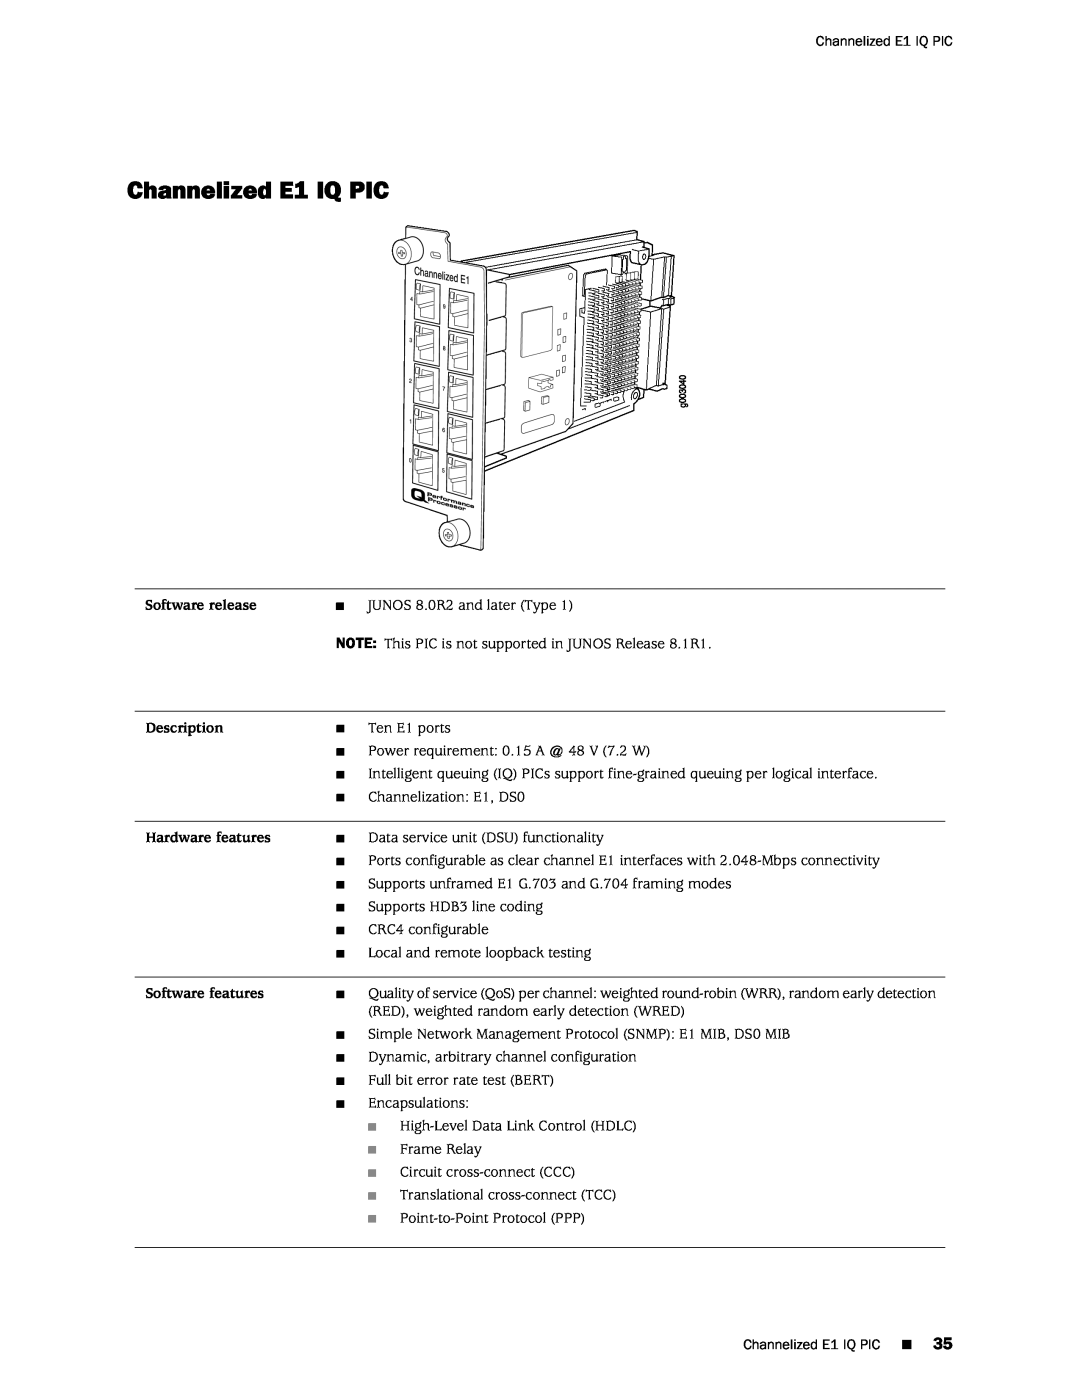 Juniper Networks M120 manual Channelized E1 IQ PIC 